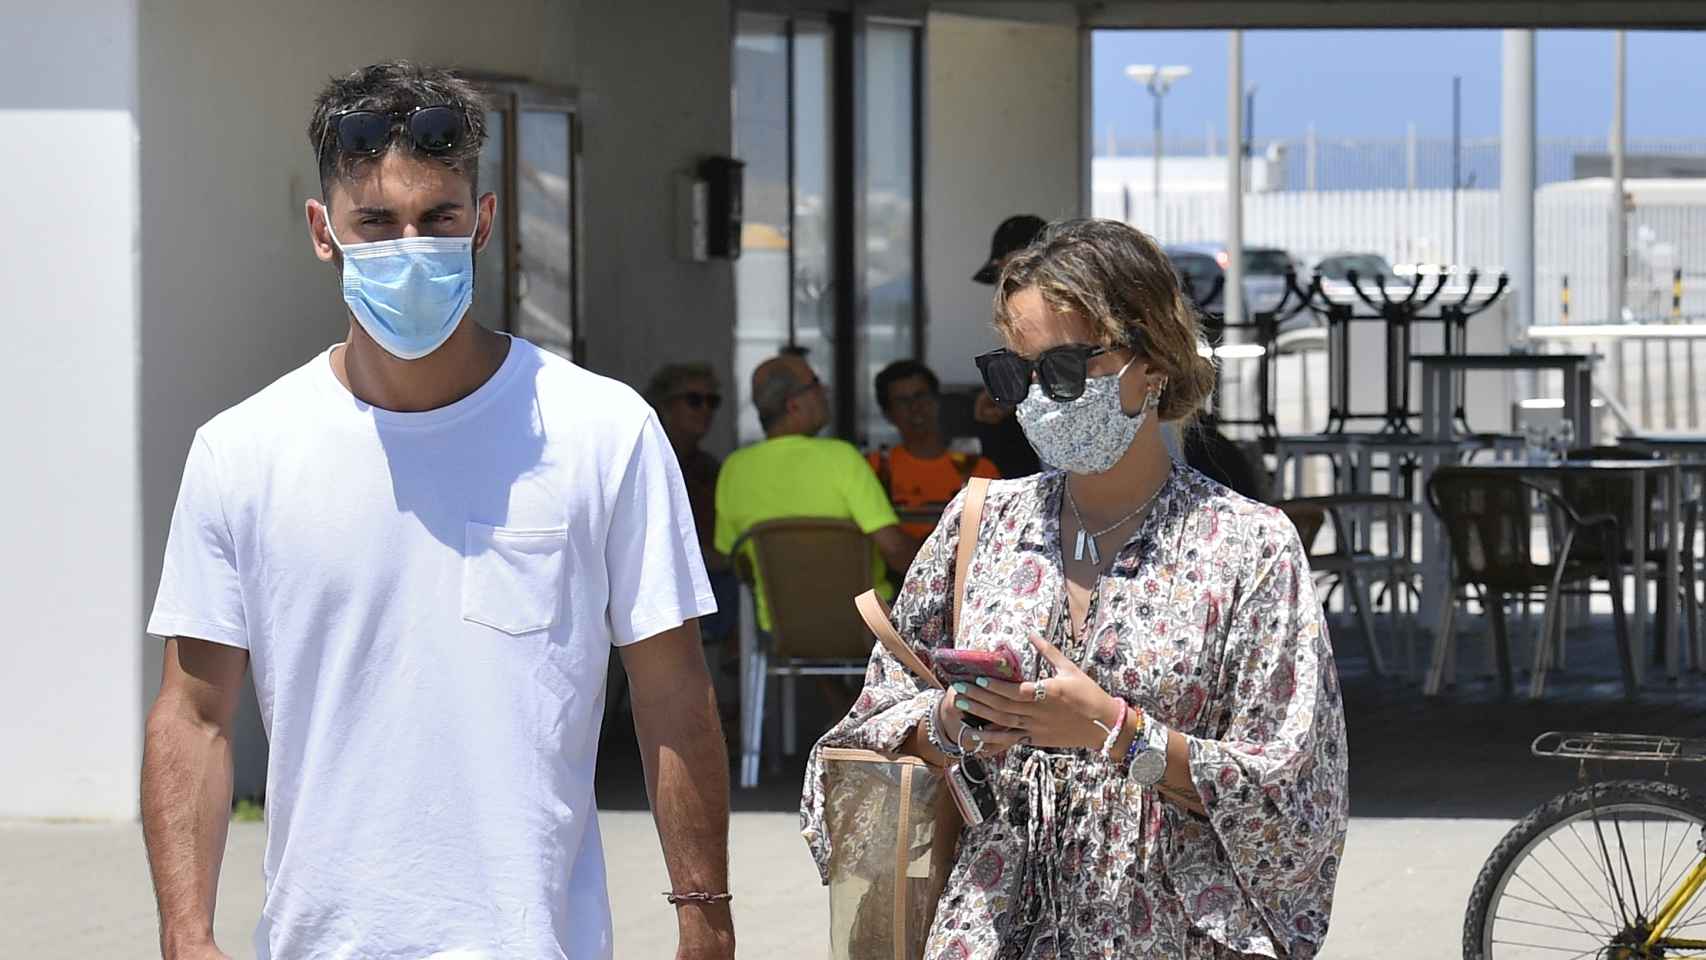 Gloria Camila y su pareja paseando por las calles de Chipiona.